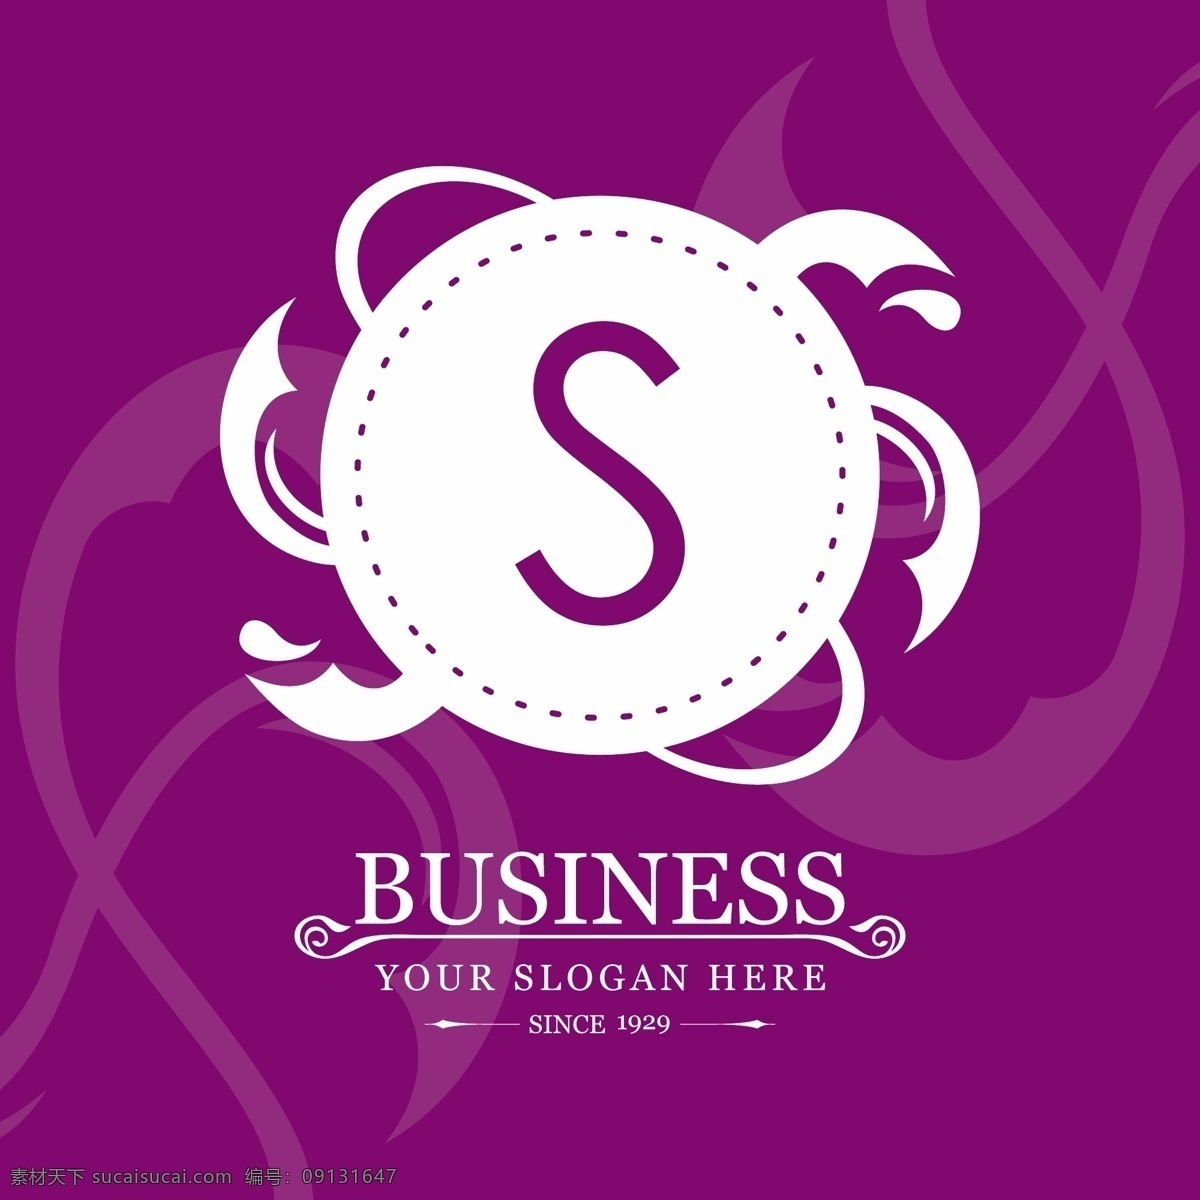 标志 字母 s 紫色 背景 上 标识 业务 营销 形状 企业 公司 品牌 现代 企业标识 品牌标识 商业标识 公司标志 口号 标记线